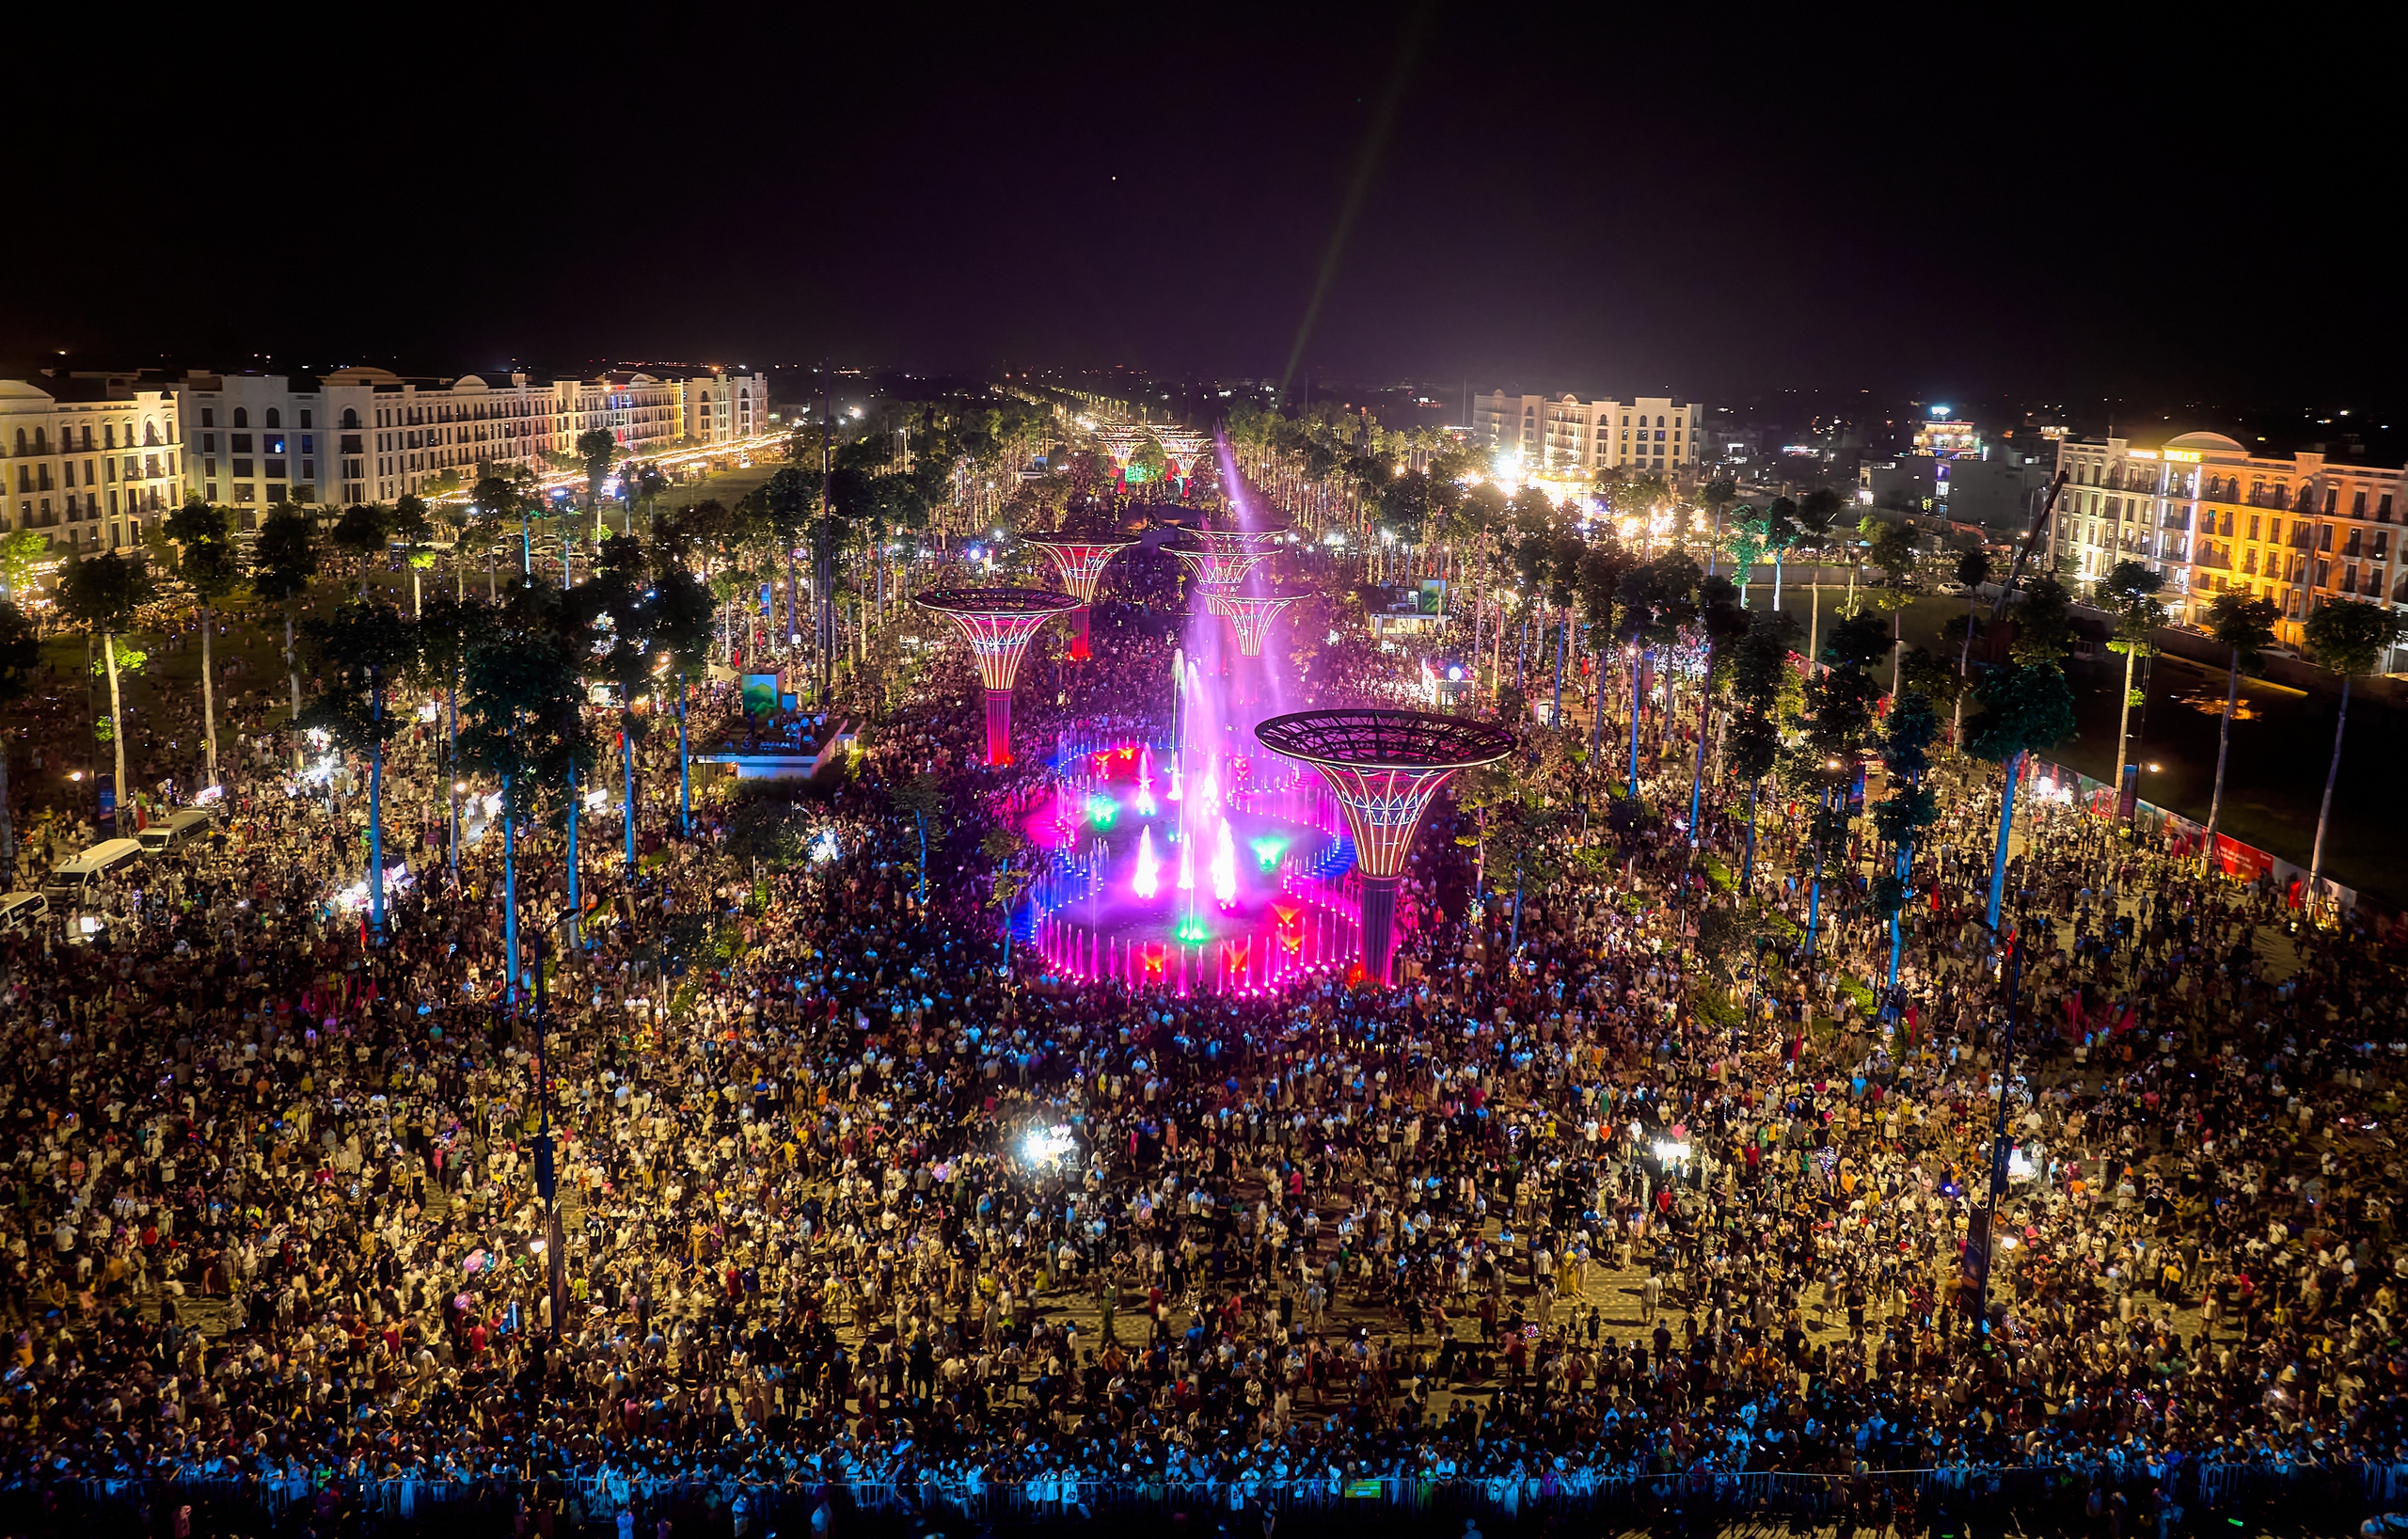 Tối 27.4, hơn 300.000 người đã đổ về quảng trường để xem chương trình nghệ thuật khai mạc, chứng kiến khánh thành quảng trường và xem màn pháo hoa rực rỡ cuối chương trình